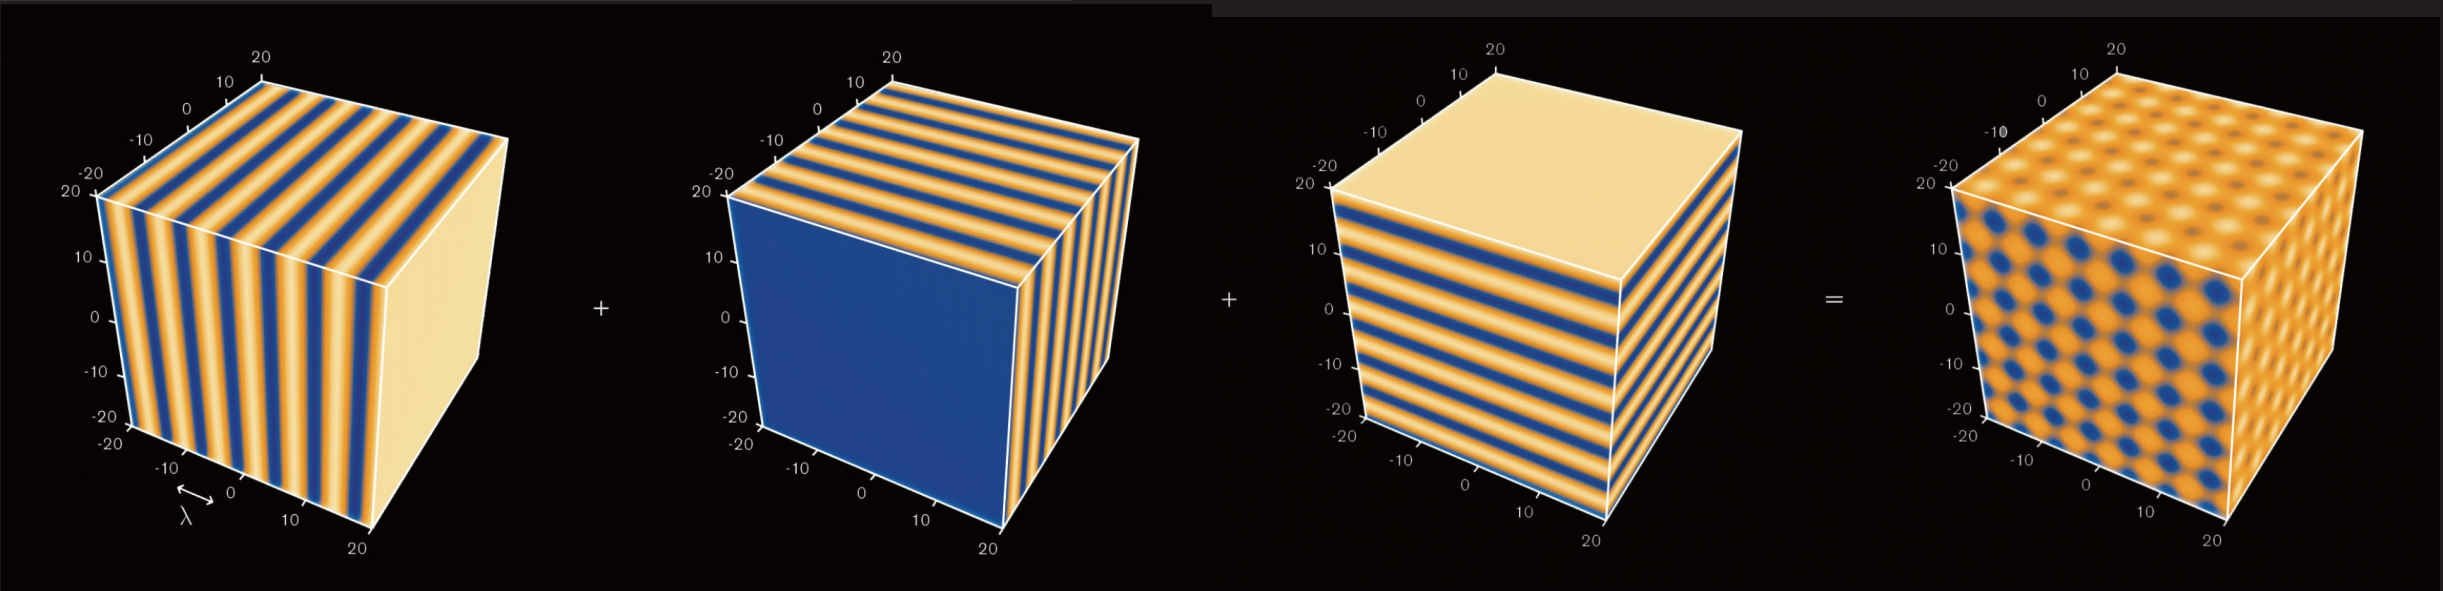  把3组平面波扰动叠加在等离子体方块之后，最后形成的波纹图案见第四块方块